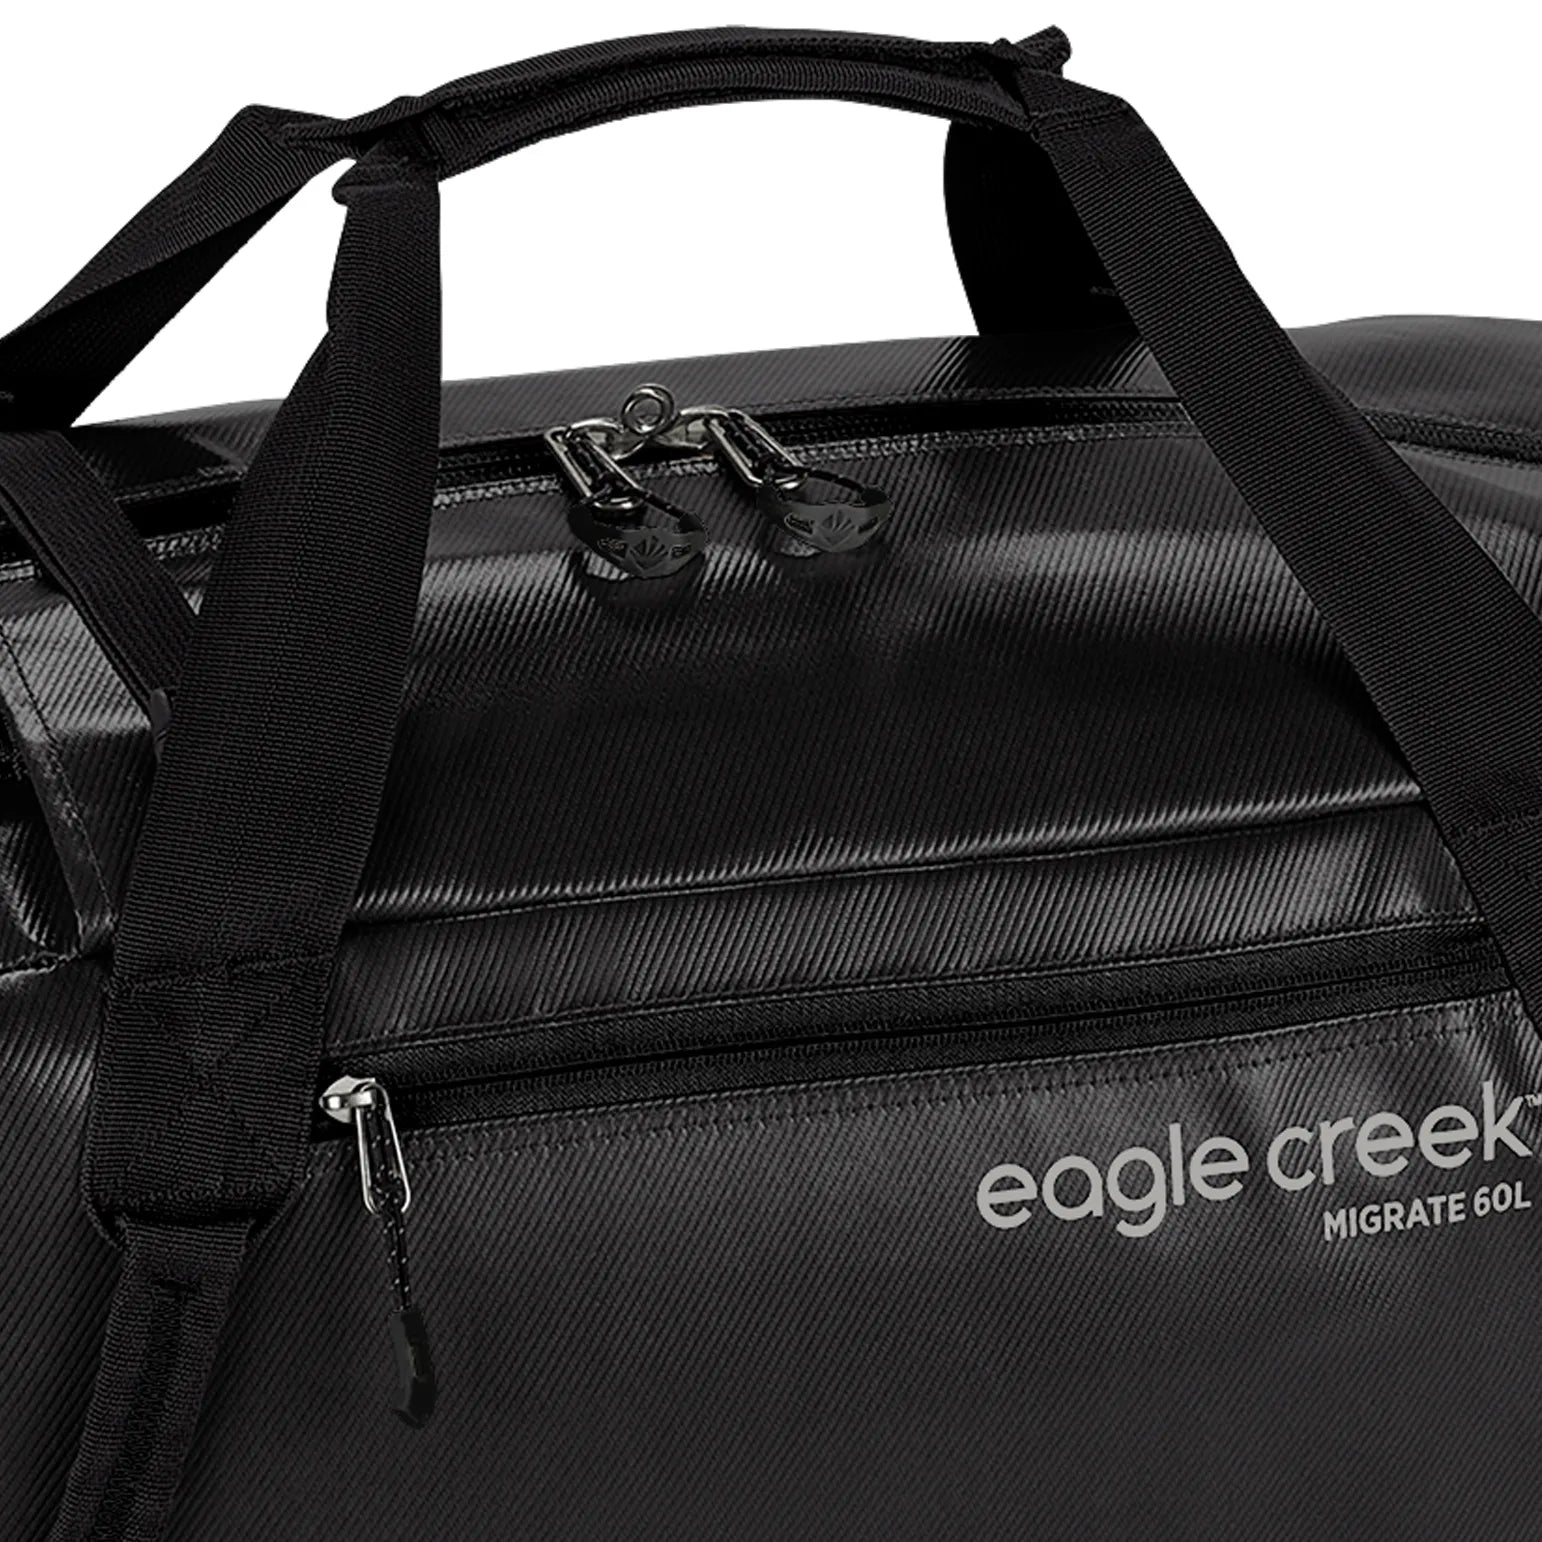 Eagle Creek Migrate travel bag 59 cm - Forest